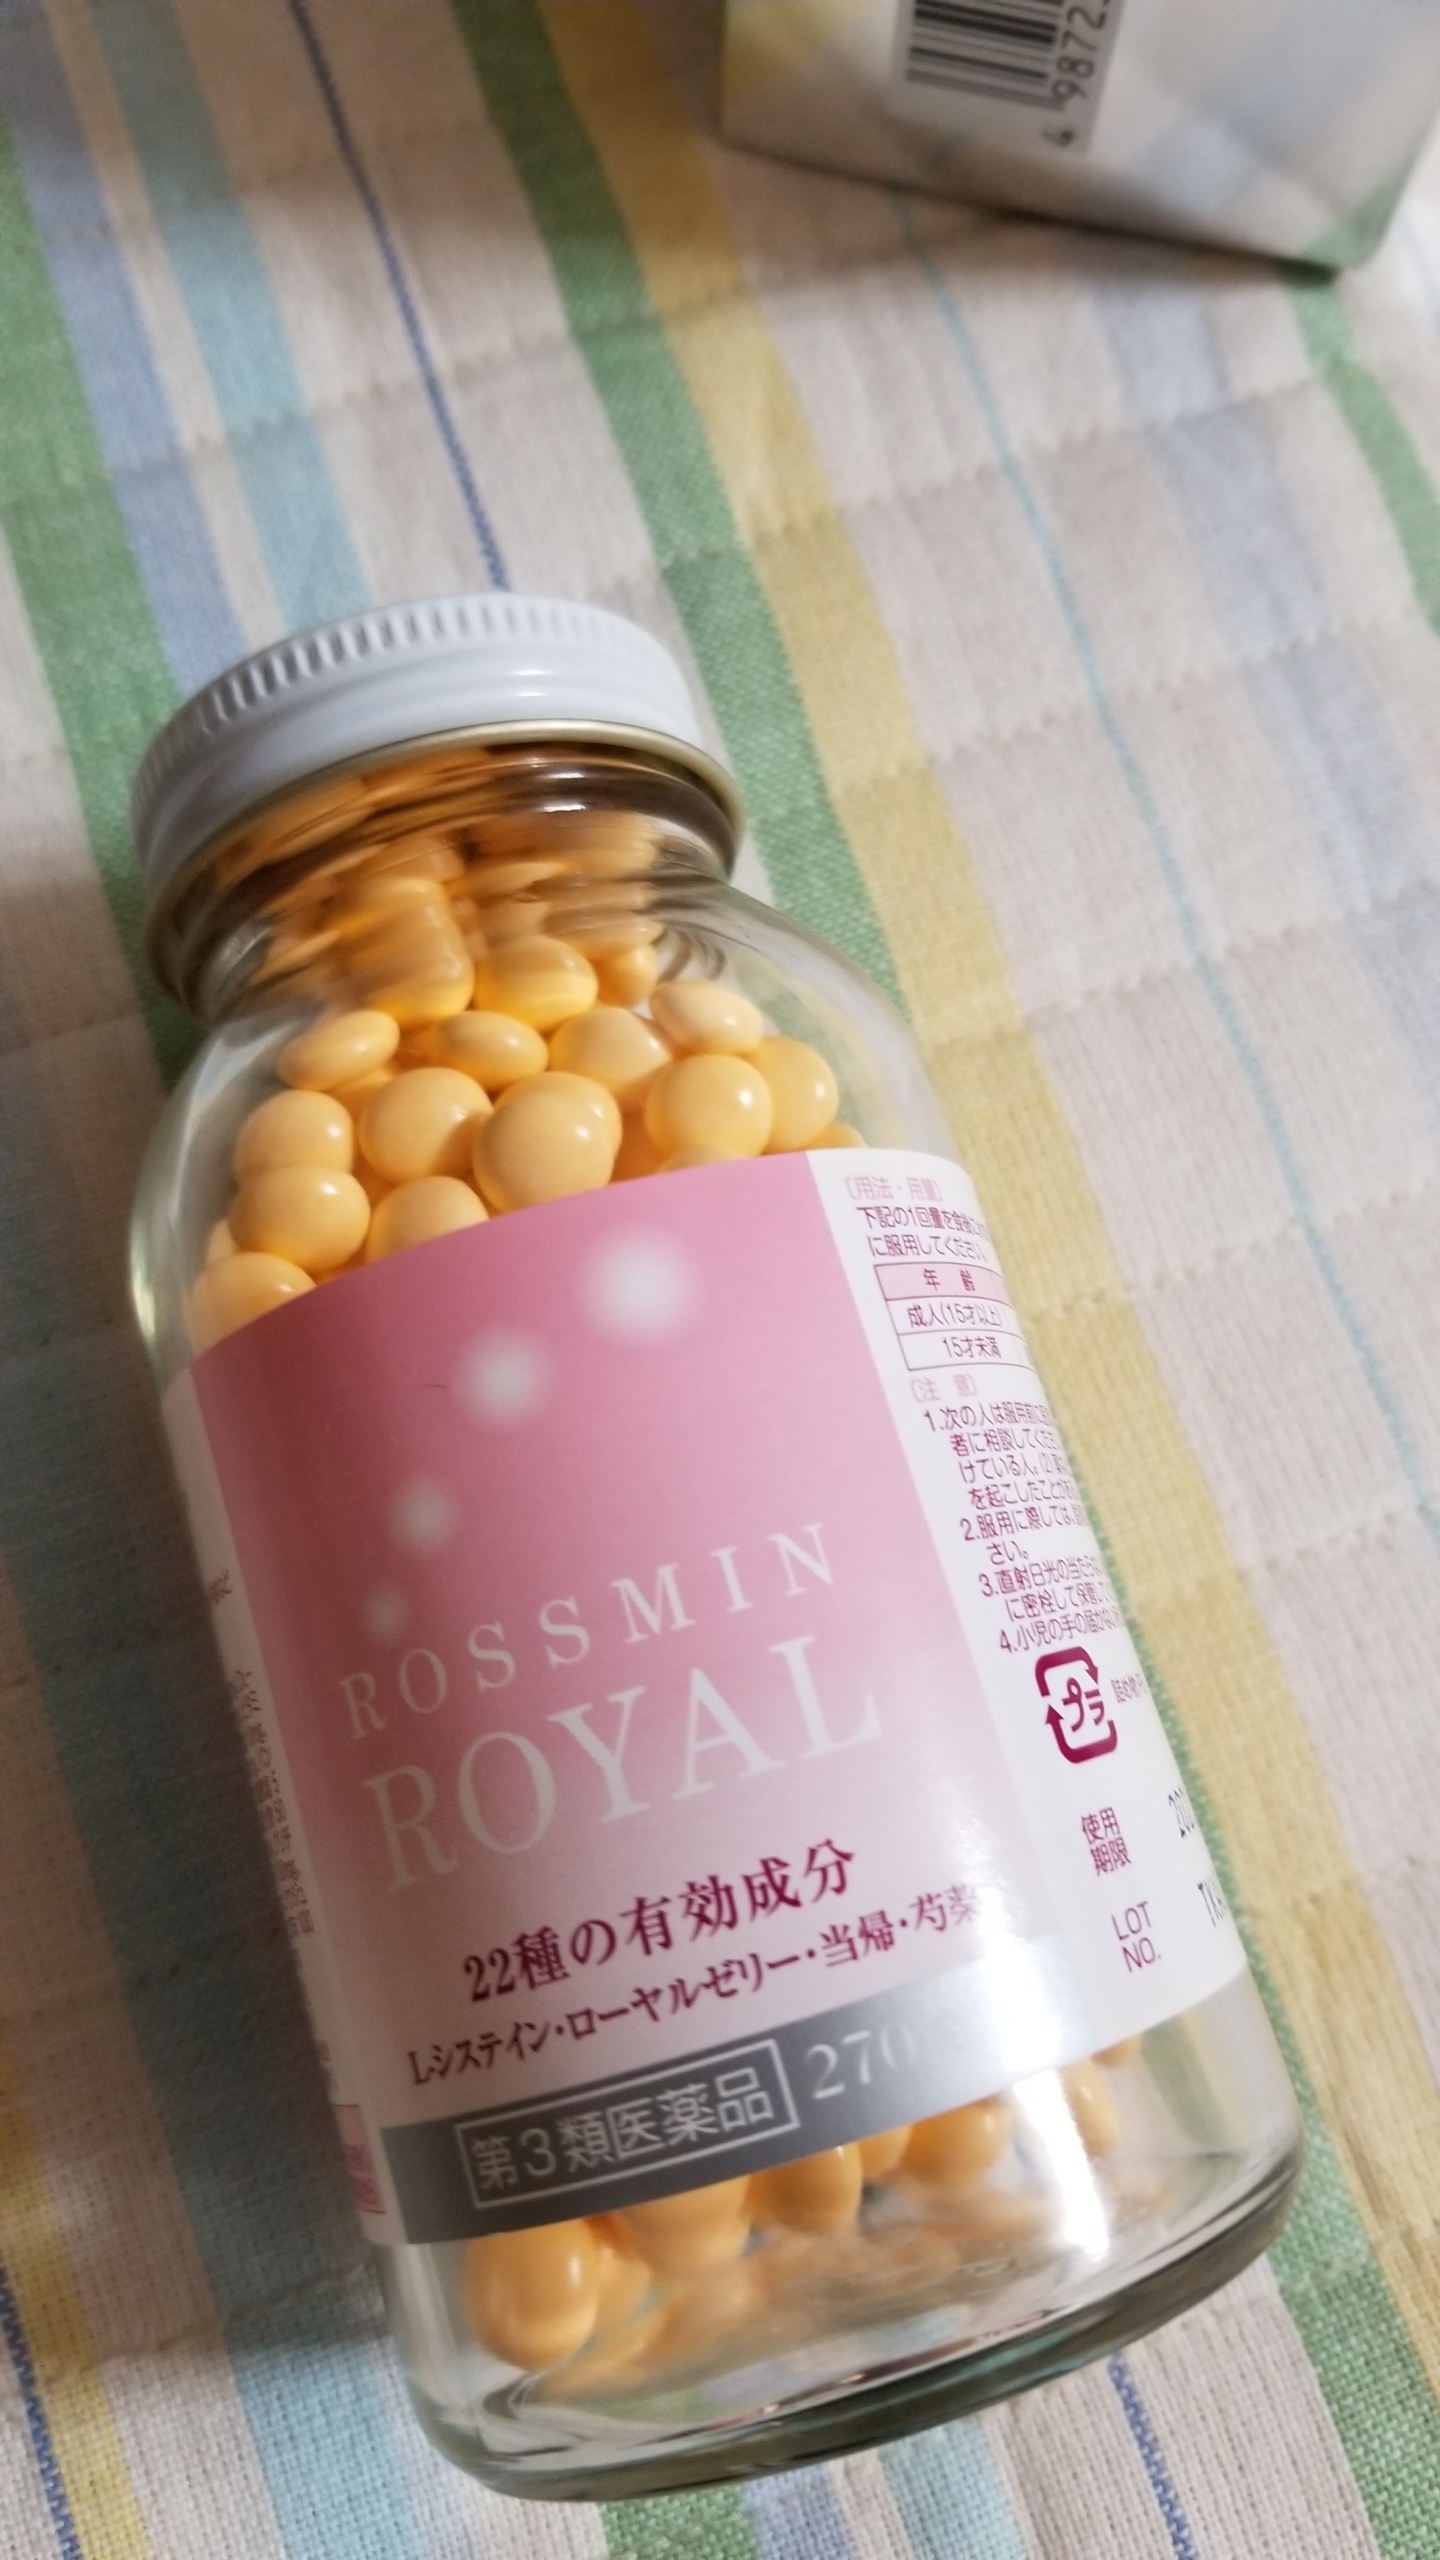 ロスミン / ロスミンローヤル(医薬品)の公式商品情報｜美容・化粧品 